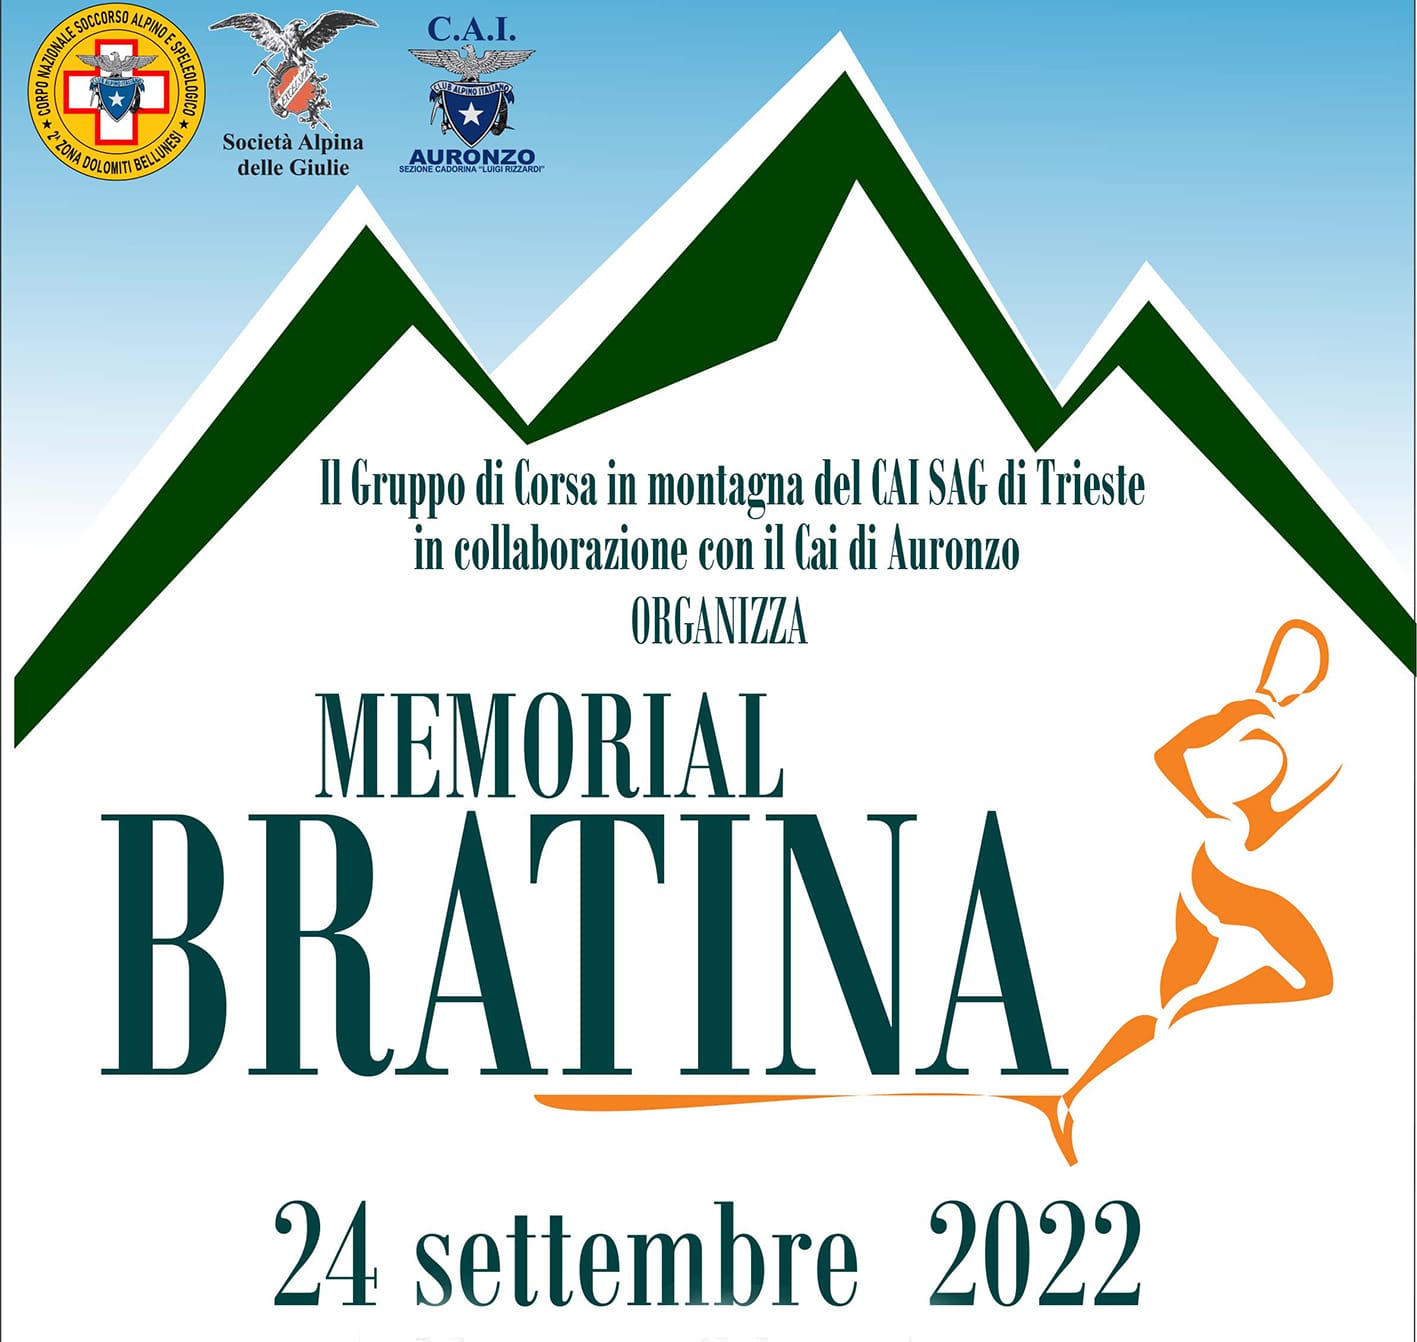 memorial bratina2022 quadrata